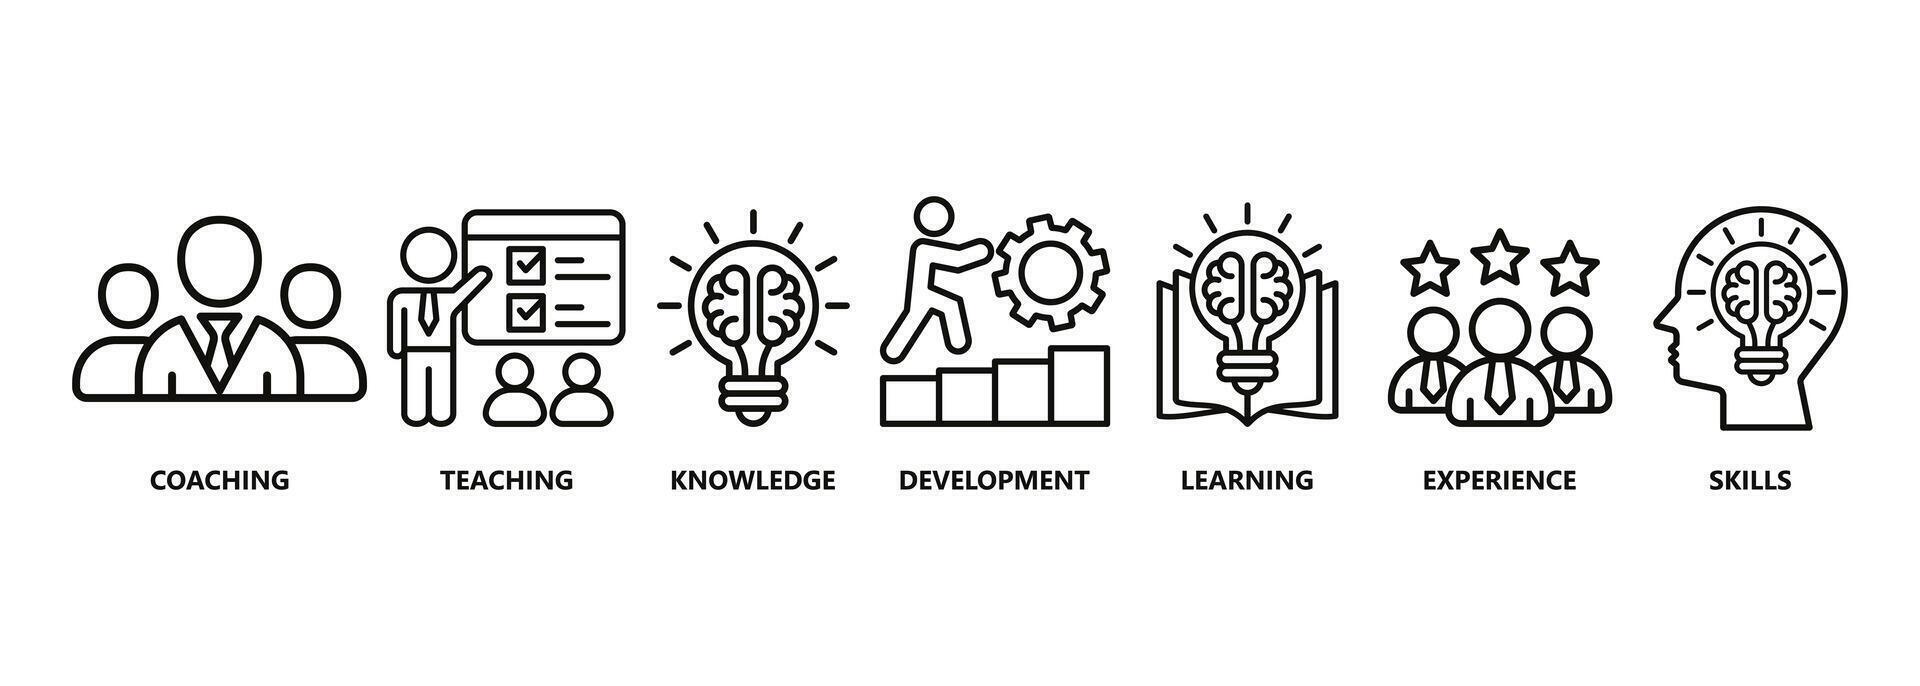 formation bannière la toile icône vecteur illustration concept pour éducation avec icône de encadrement, enseignement, connaissance, développement, apprentissage, expérience, et compétences